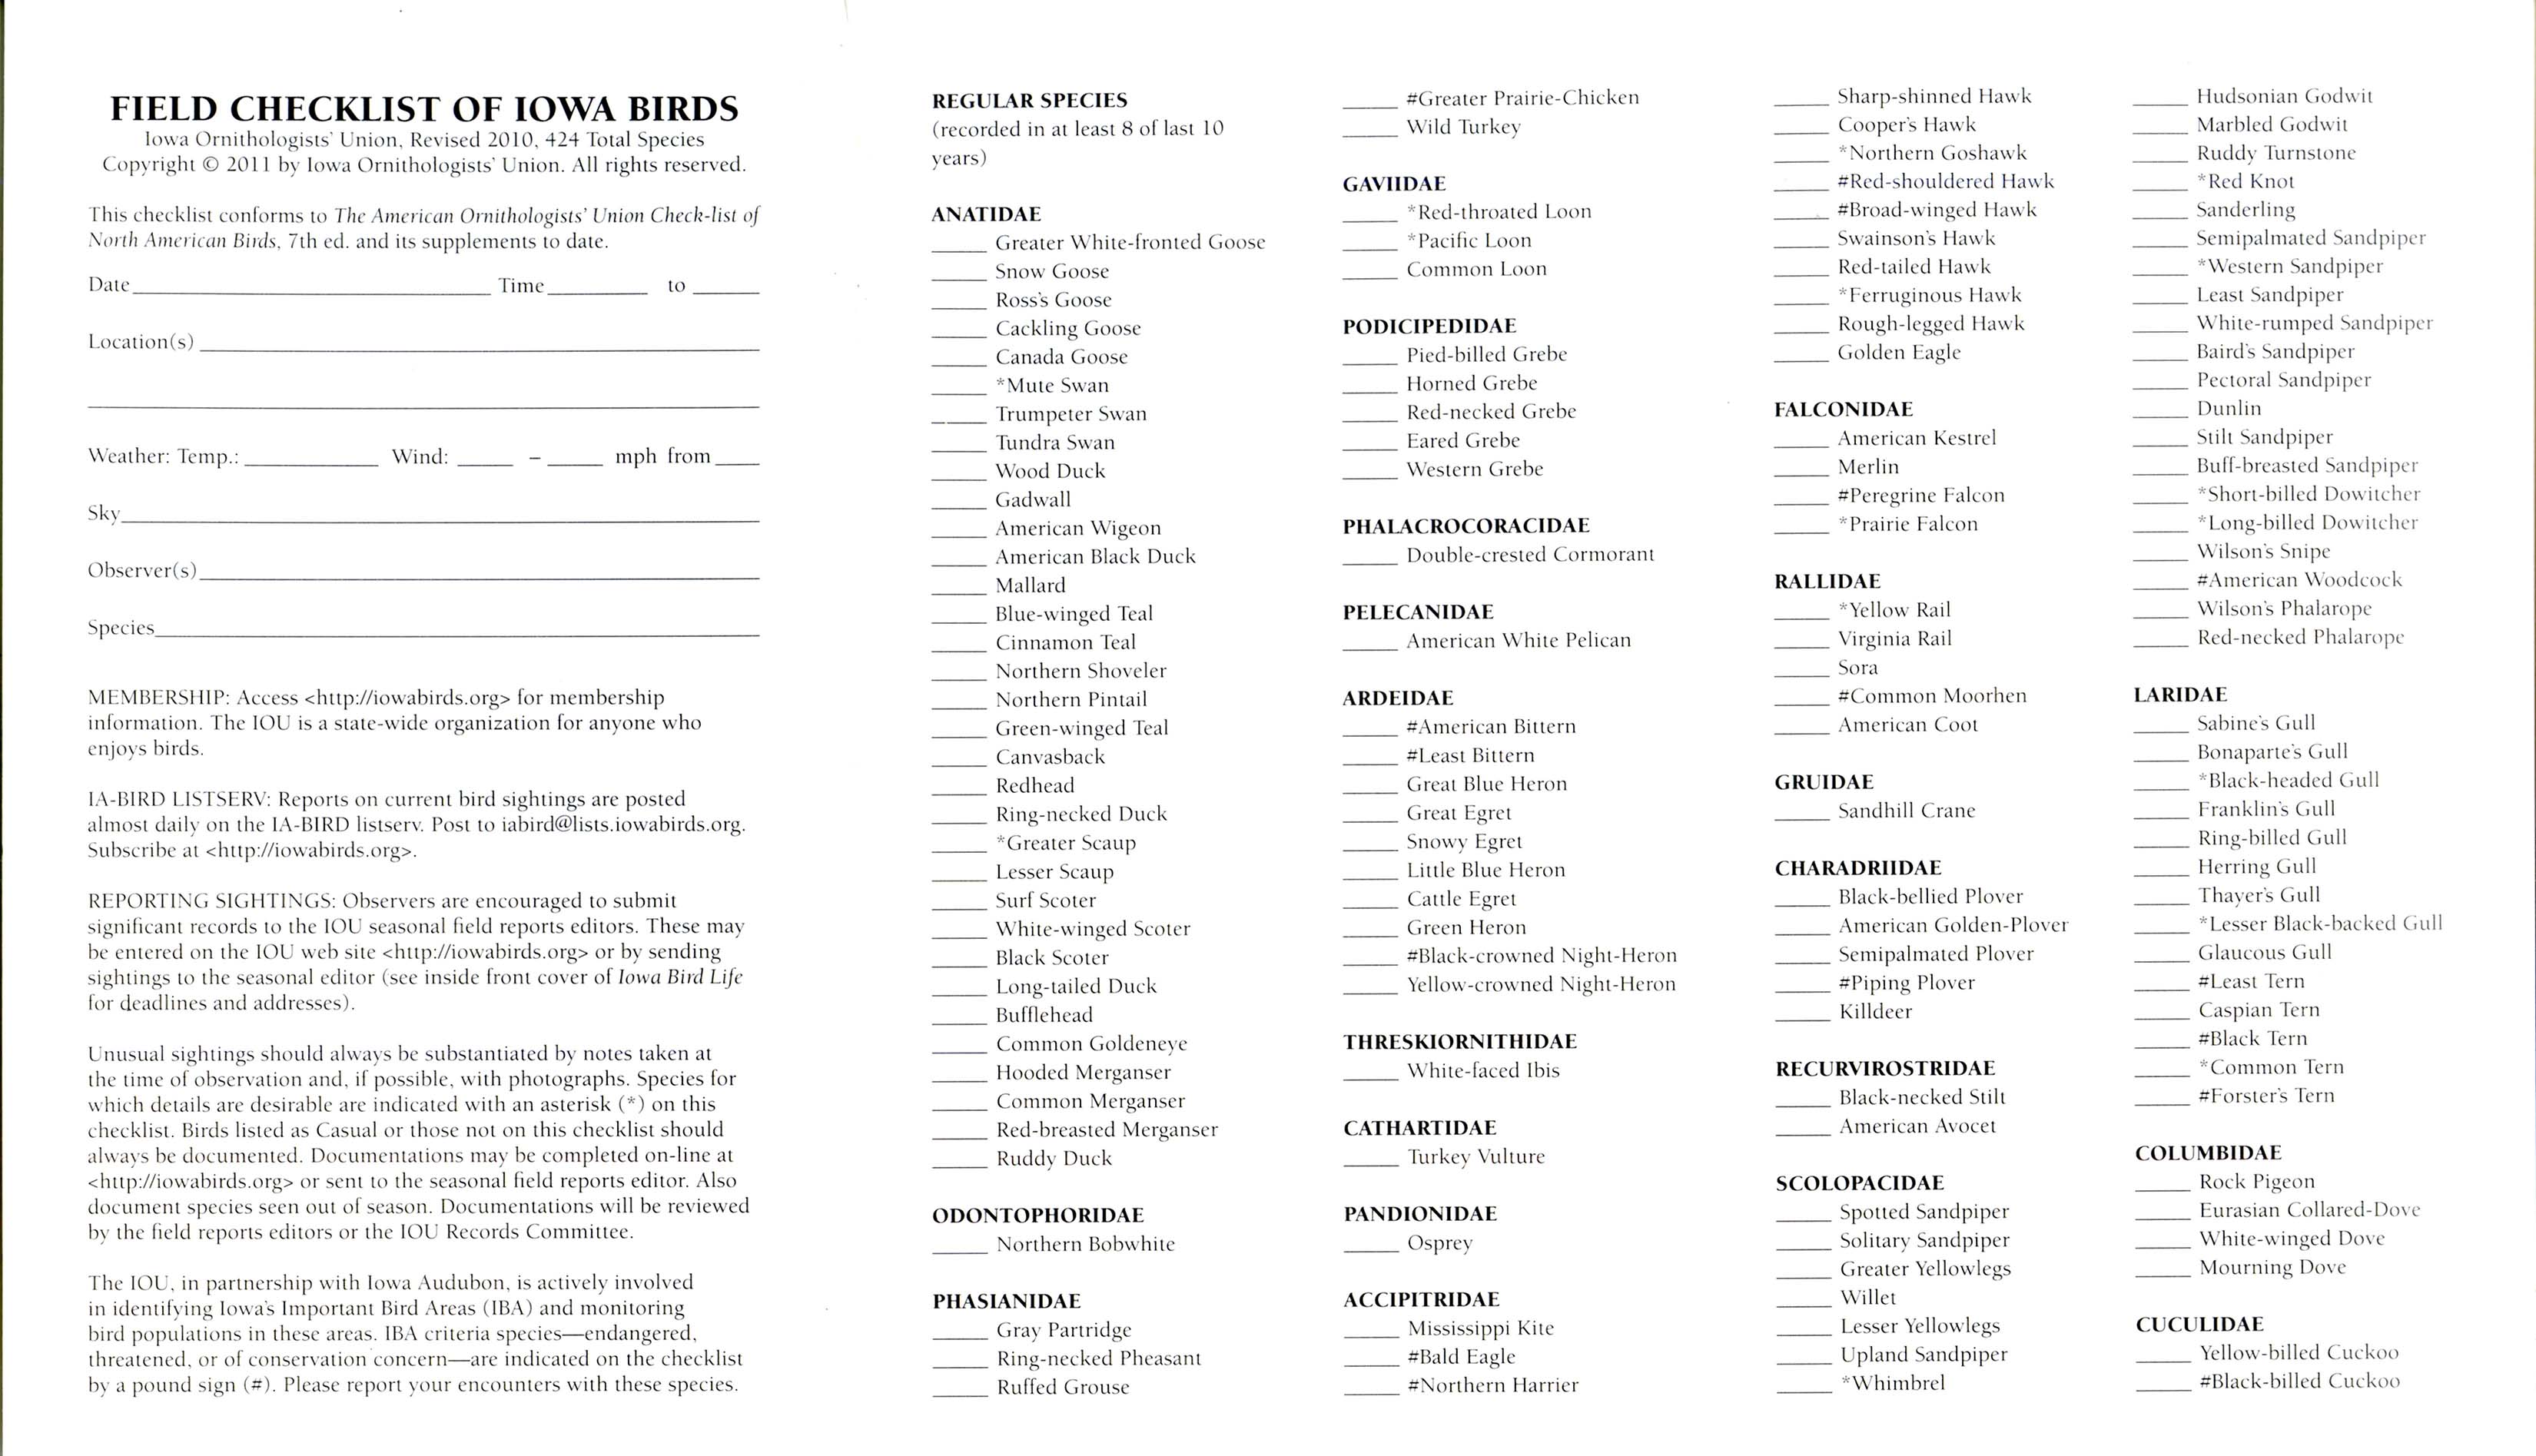 Field checklist of Iowa birds, revised 2010